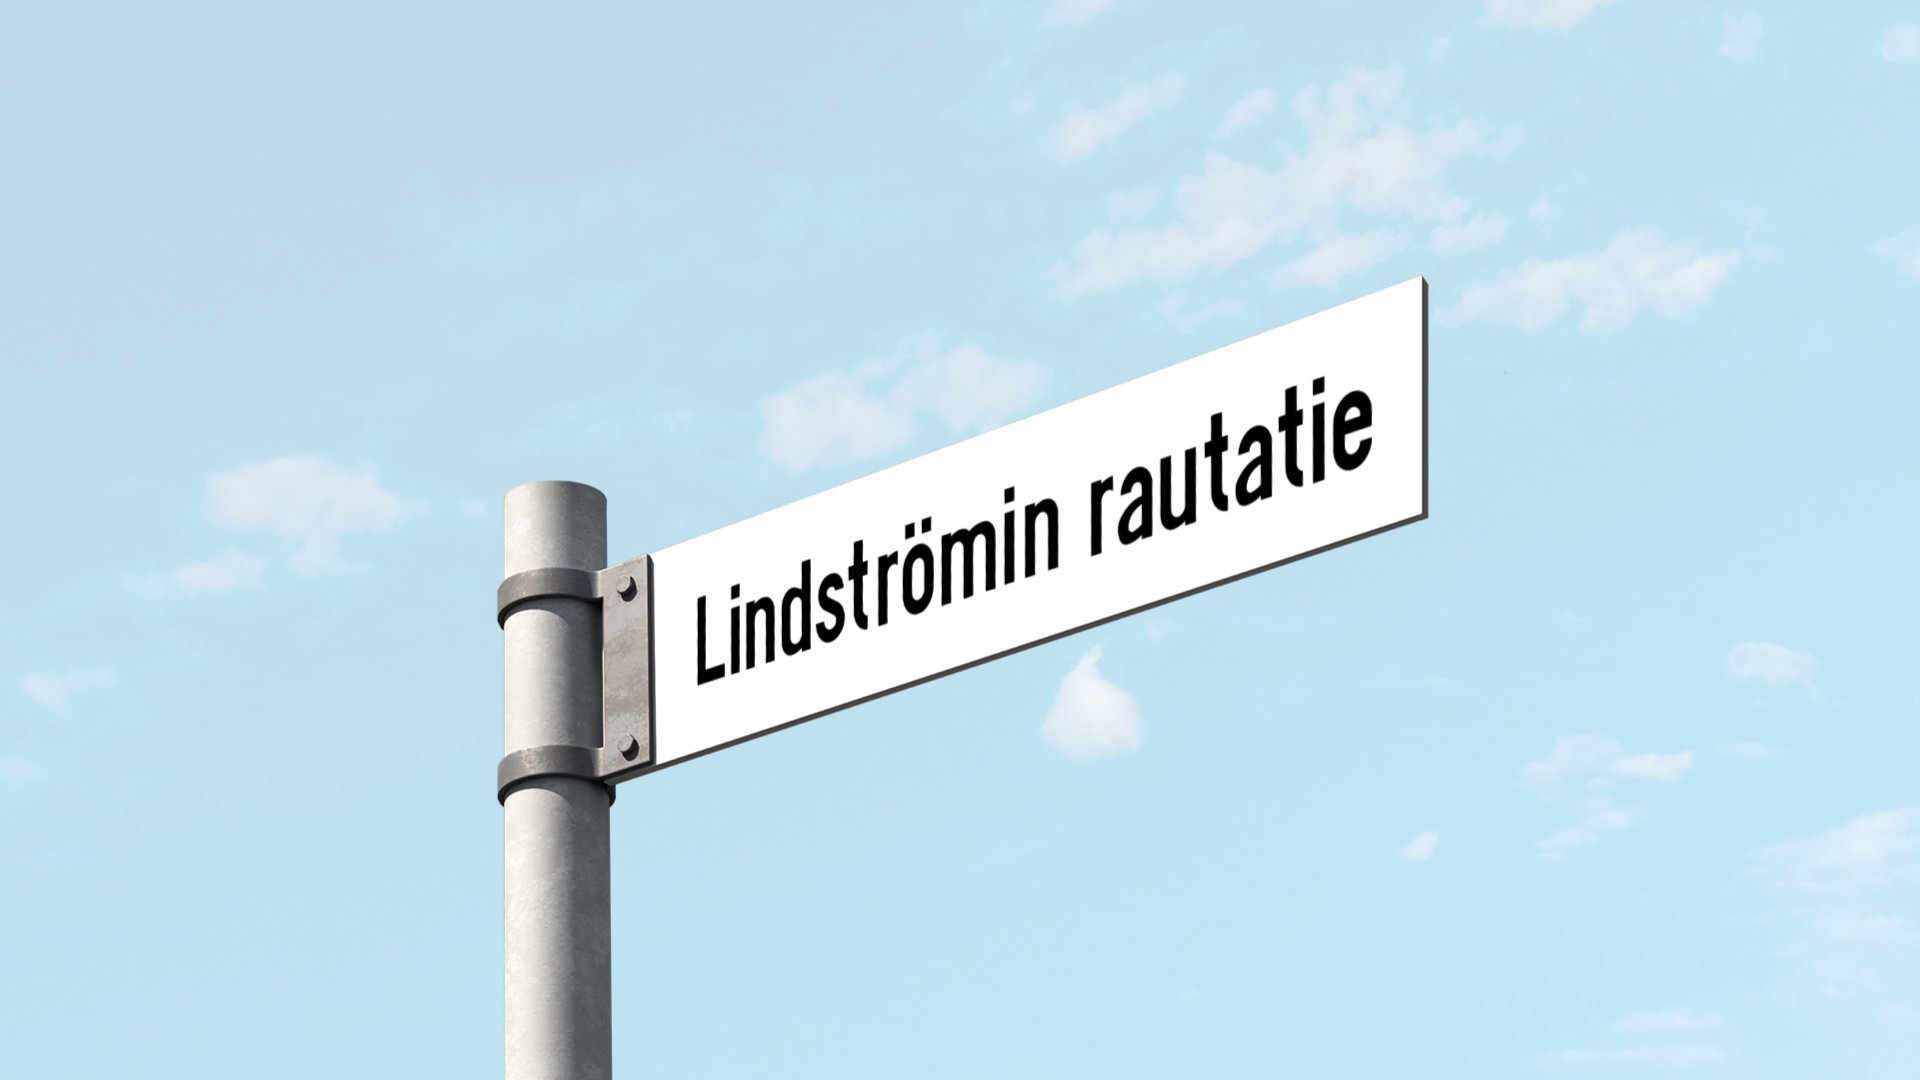 VR on nimennyt Pasilan ja Tikkurilan välisen rataosuuden Lindströmin rautatieksi.